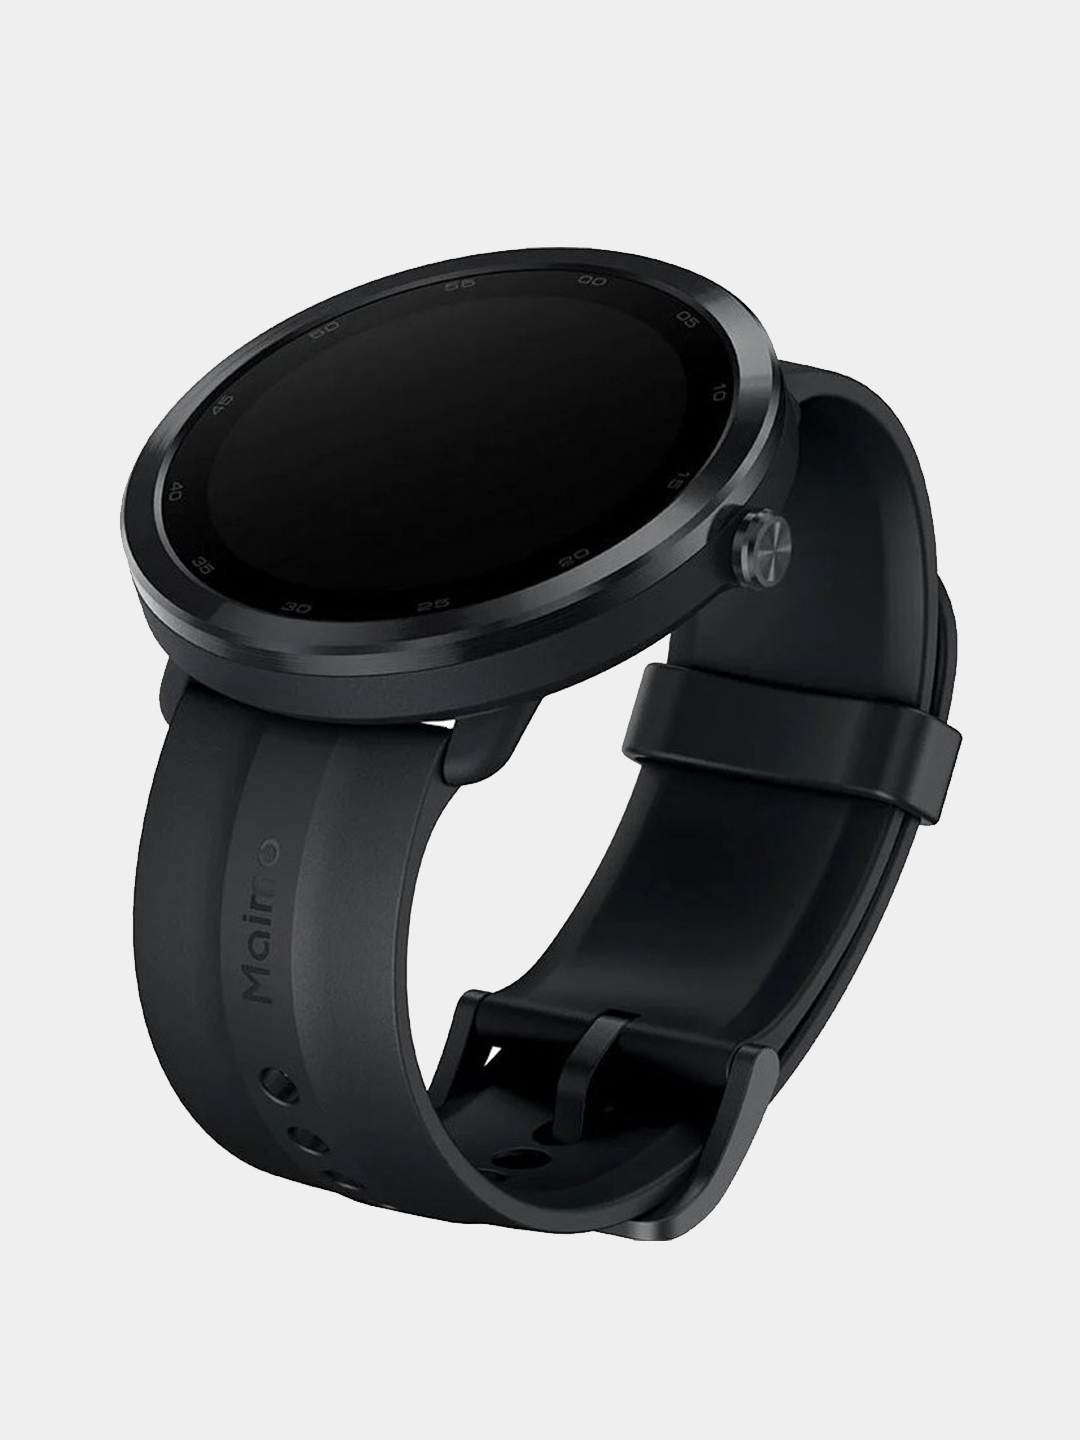 Maimo watch r. Wt2001 умные часы Maimo watch r. WIWATCH r1 ремешки. На руке микро черный GPS. На руке нано черный GPS.